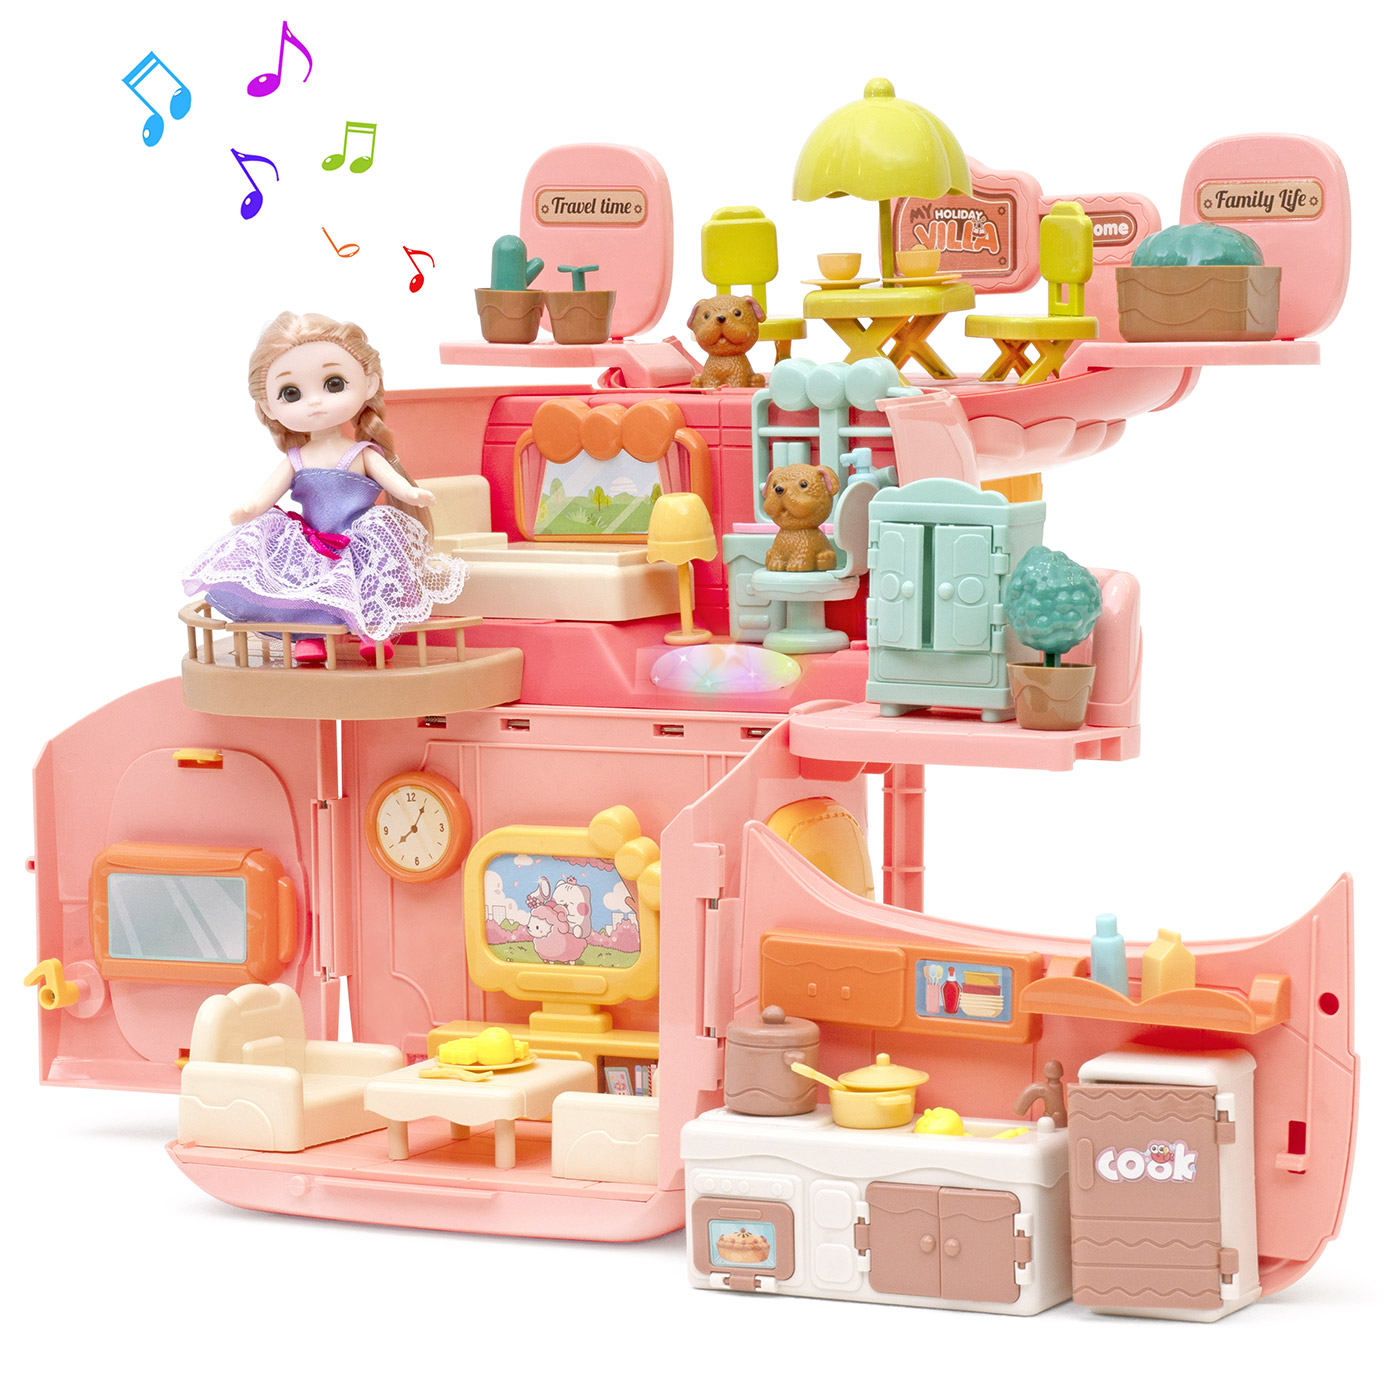 Игровой набор с куклами Funkids Домик Мечты кукольный домик с мебелью арт. CC6673 набор lukky angel мечты единорога лак гель тени с блёстками